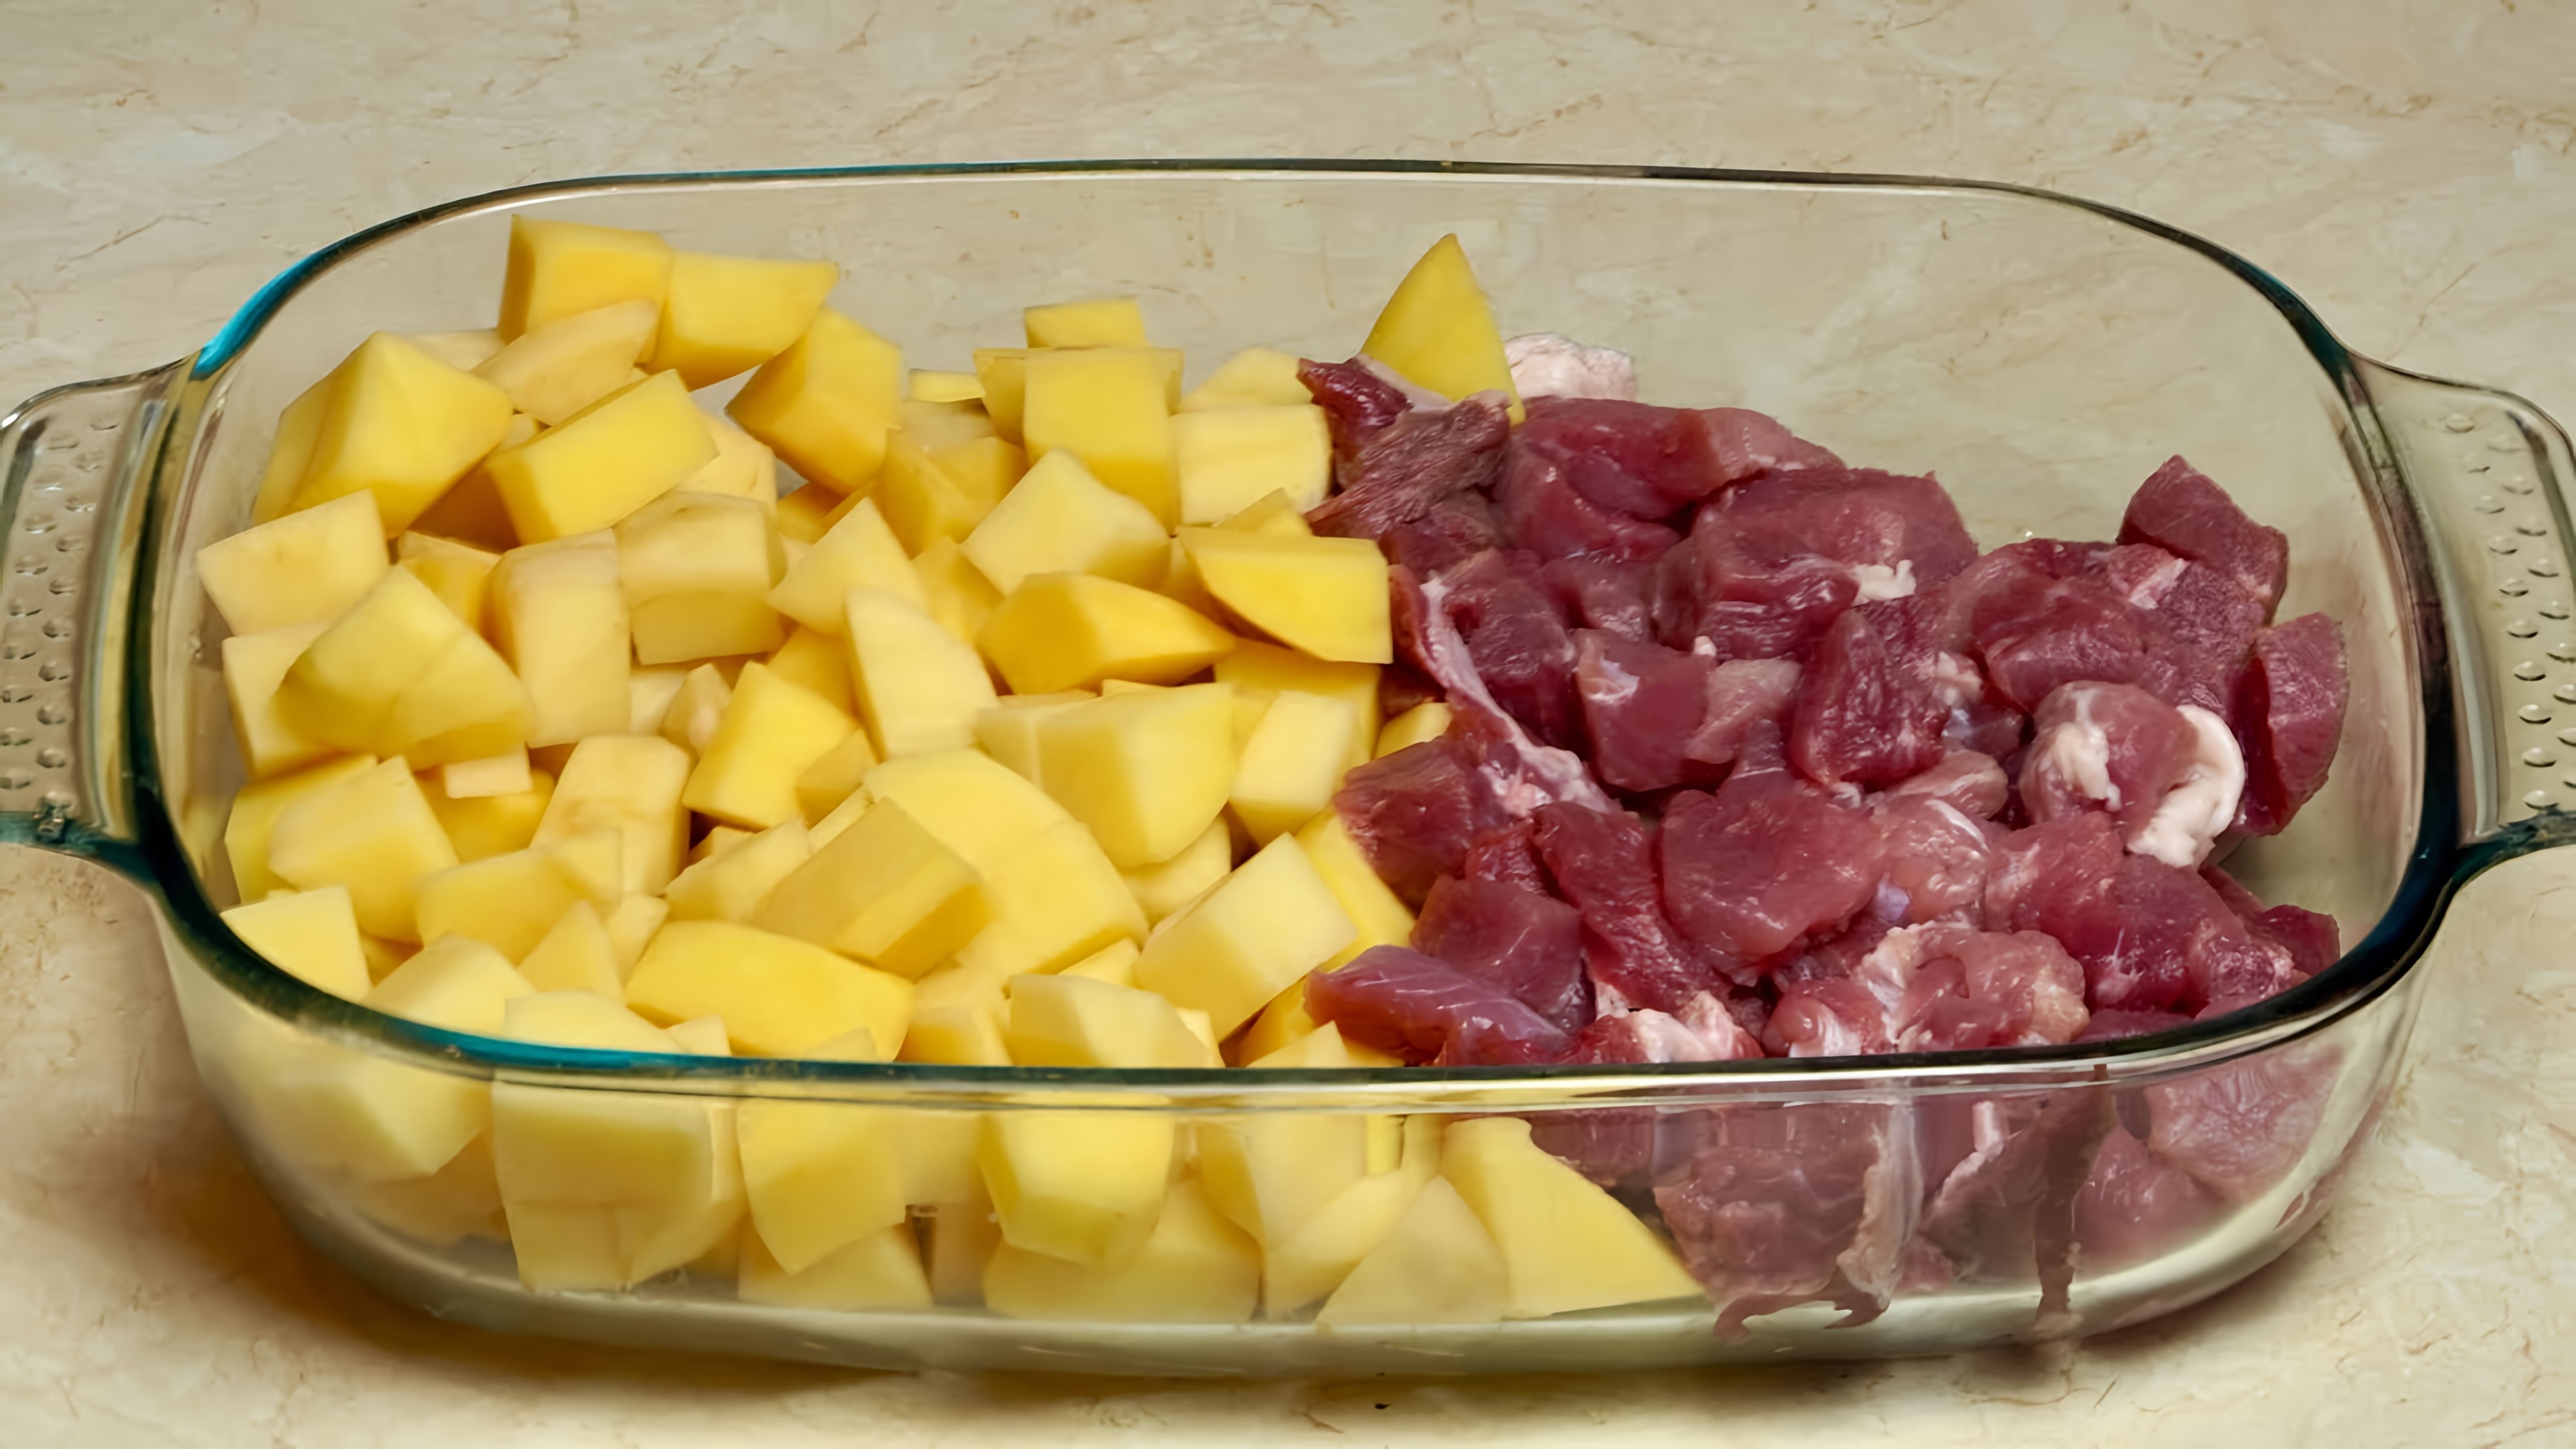 В этом видео демонстрируется процесс приготовления вкусного обеда или ужина из простых продуктов